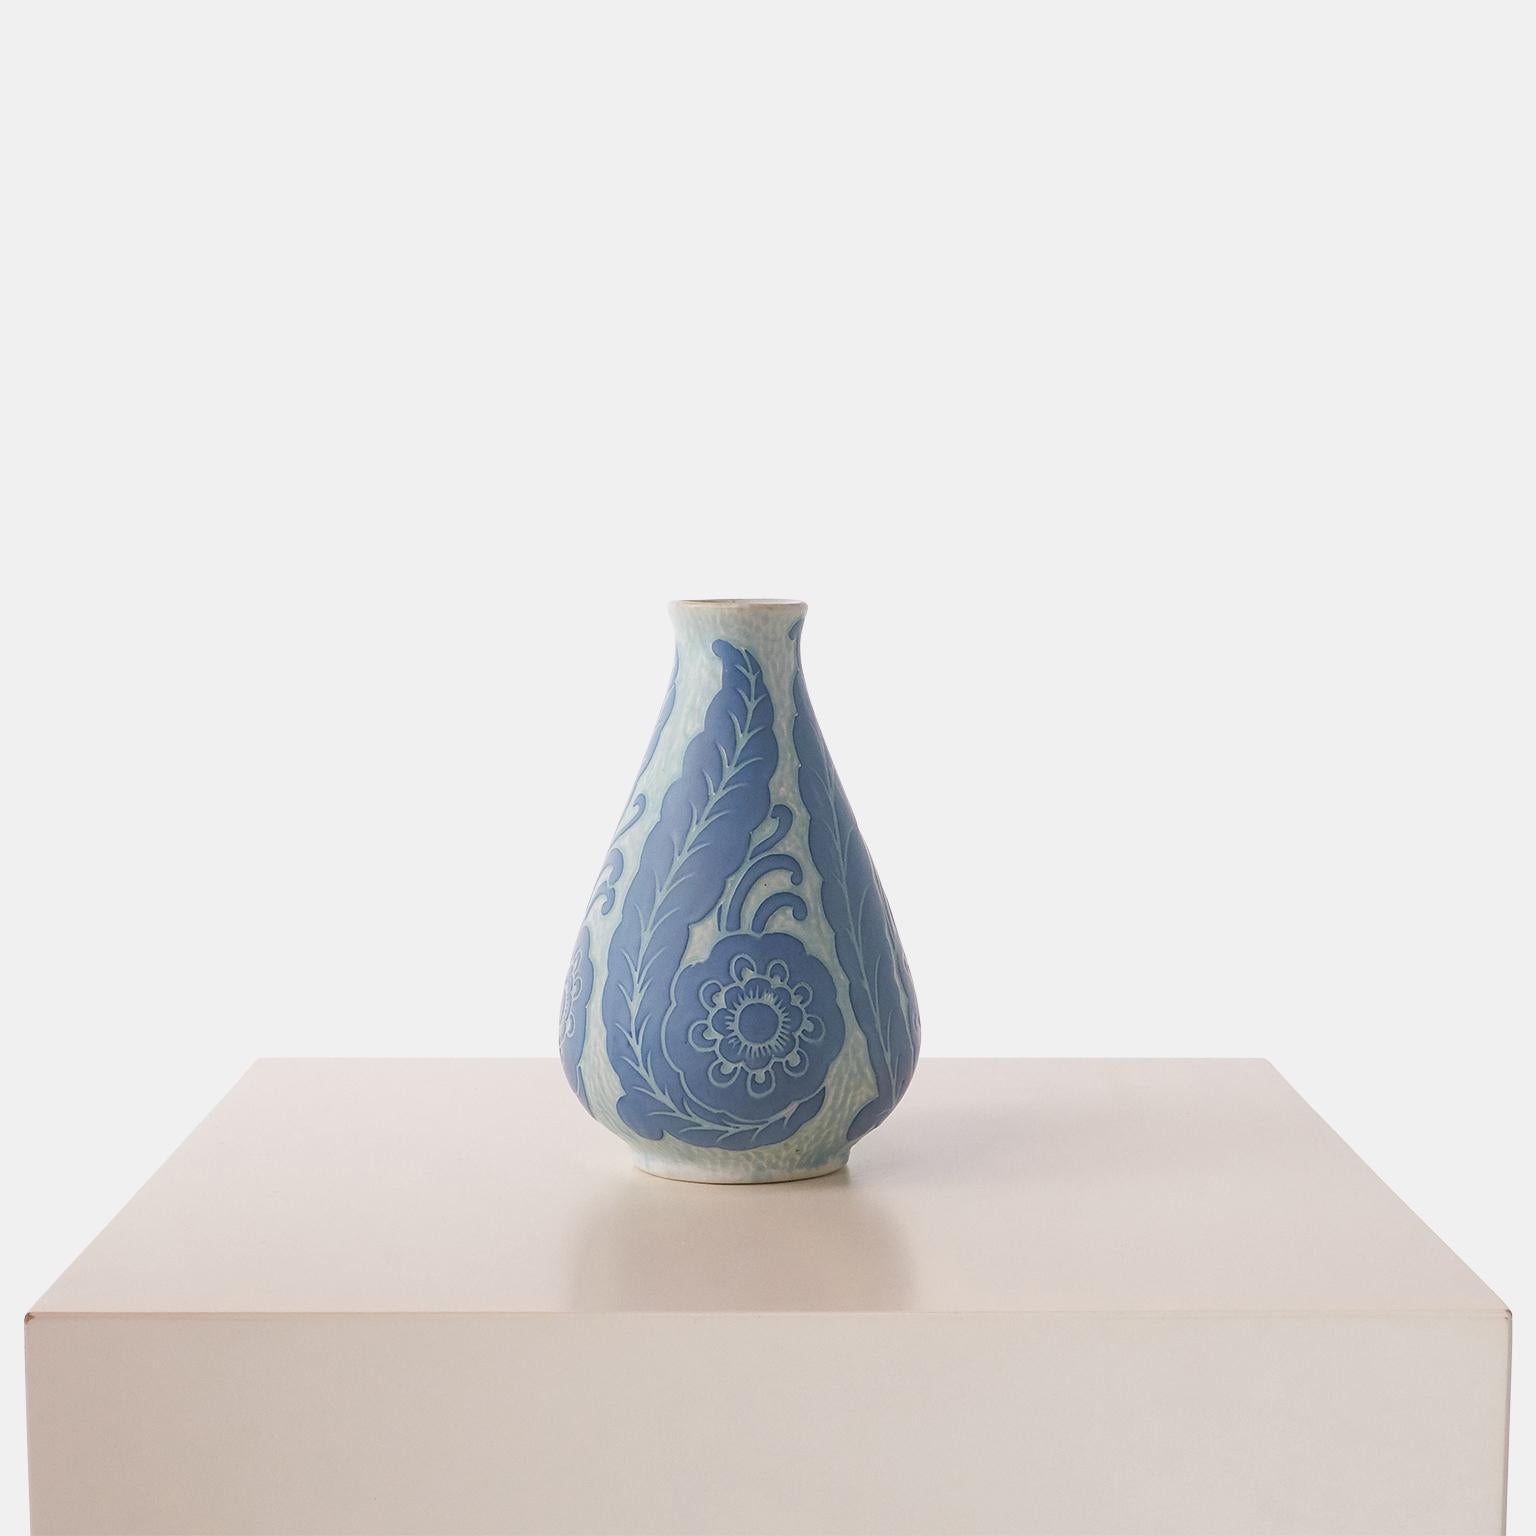 Eine handgefertigte blaue Vase von Josef Ekberg für Gustavsberg. Jedes Stück ist ein Unikat und mit der von Ekberg selbst entwickelten Sgrafitto-Technik verziert.

Unterzeichnet  : Gustavsberg, 1920, JE